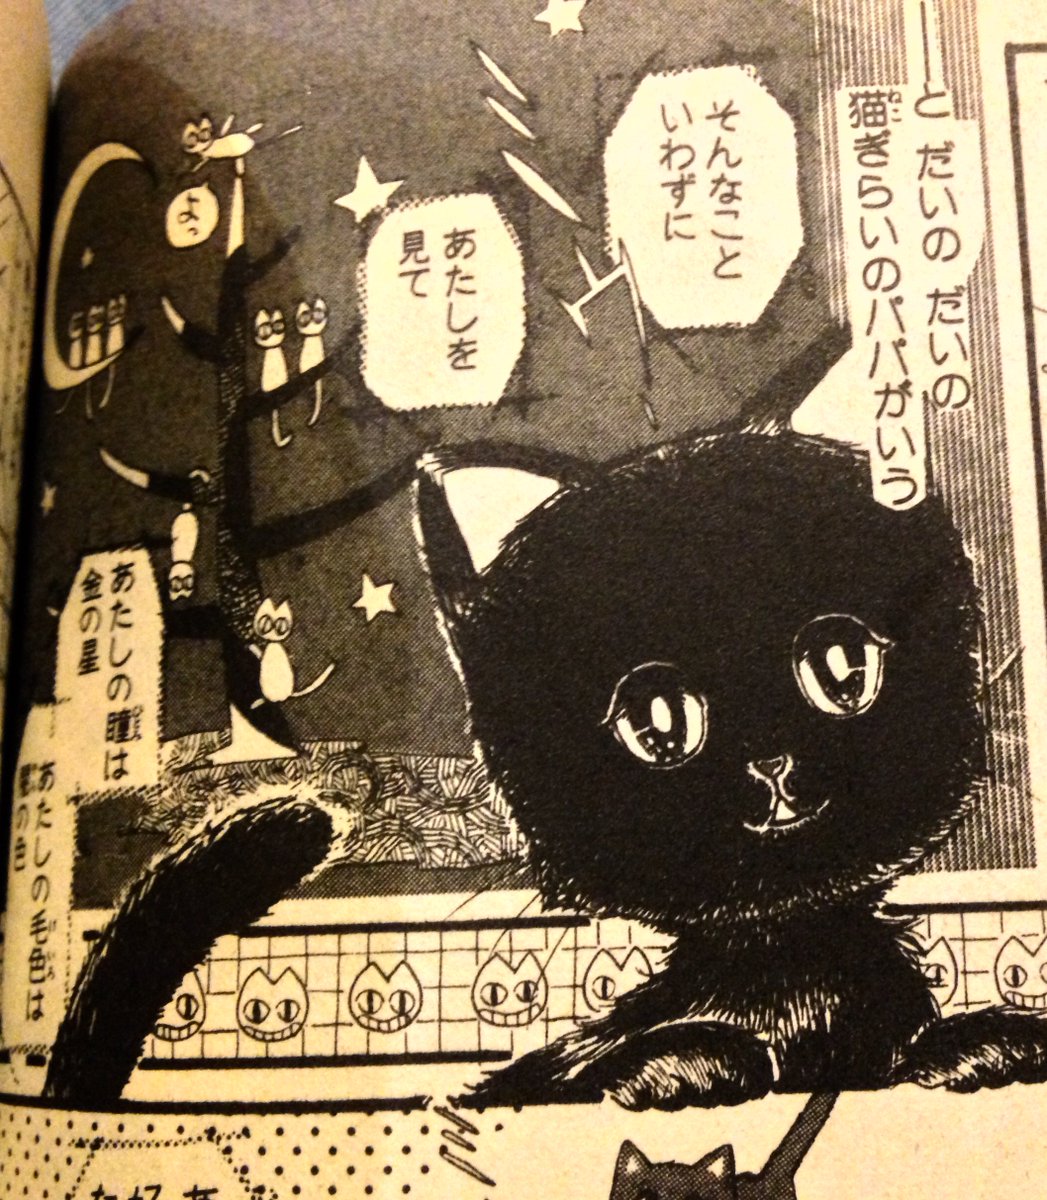 車掌 京都の漫画ミュージアムでねこねこ幻想曲の原案版 猫猫幻想曲 読んできた 初期シロの顔じわじわ来る